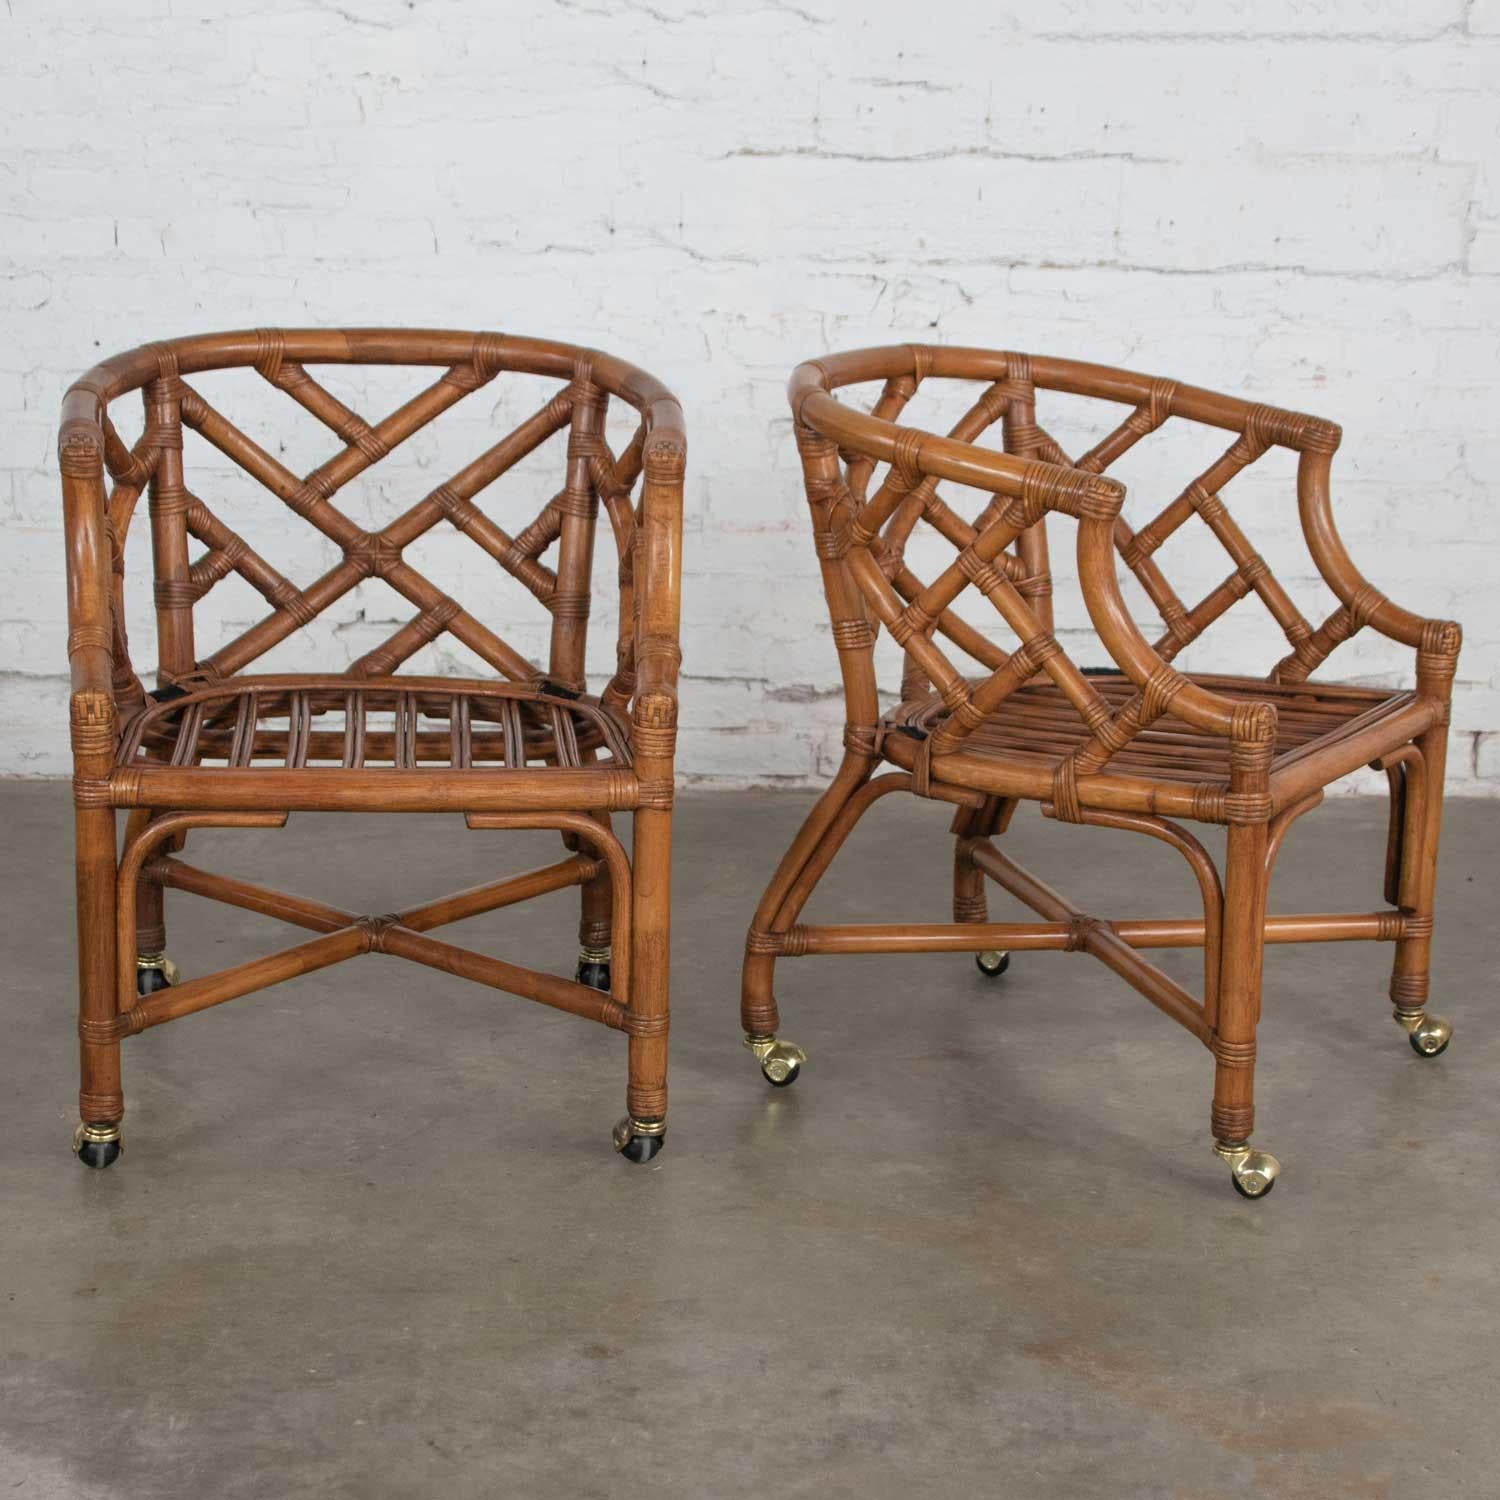 Belle paire de fauteuils d'appoint chinois Chippendale en rotin de Wicker by Henry Link. Ils sont dans un état vintage fabuleux. Ils portent un tissu floral pastel sur leurs coussins de siège amovibles (que nous pensons être un nouveau revêtement de